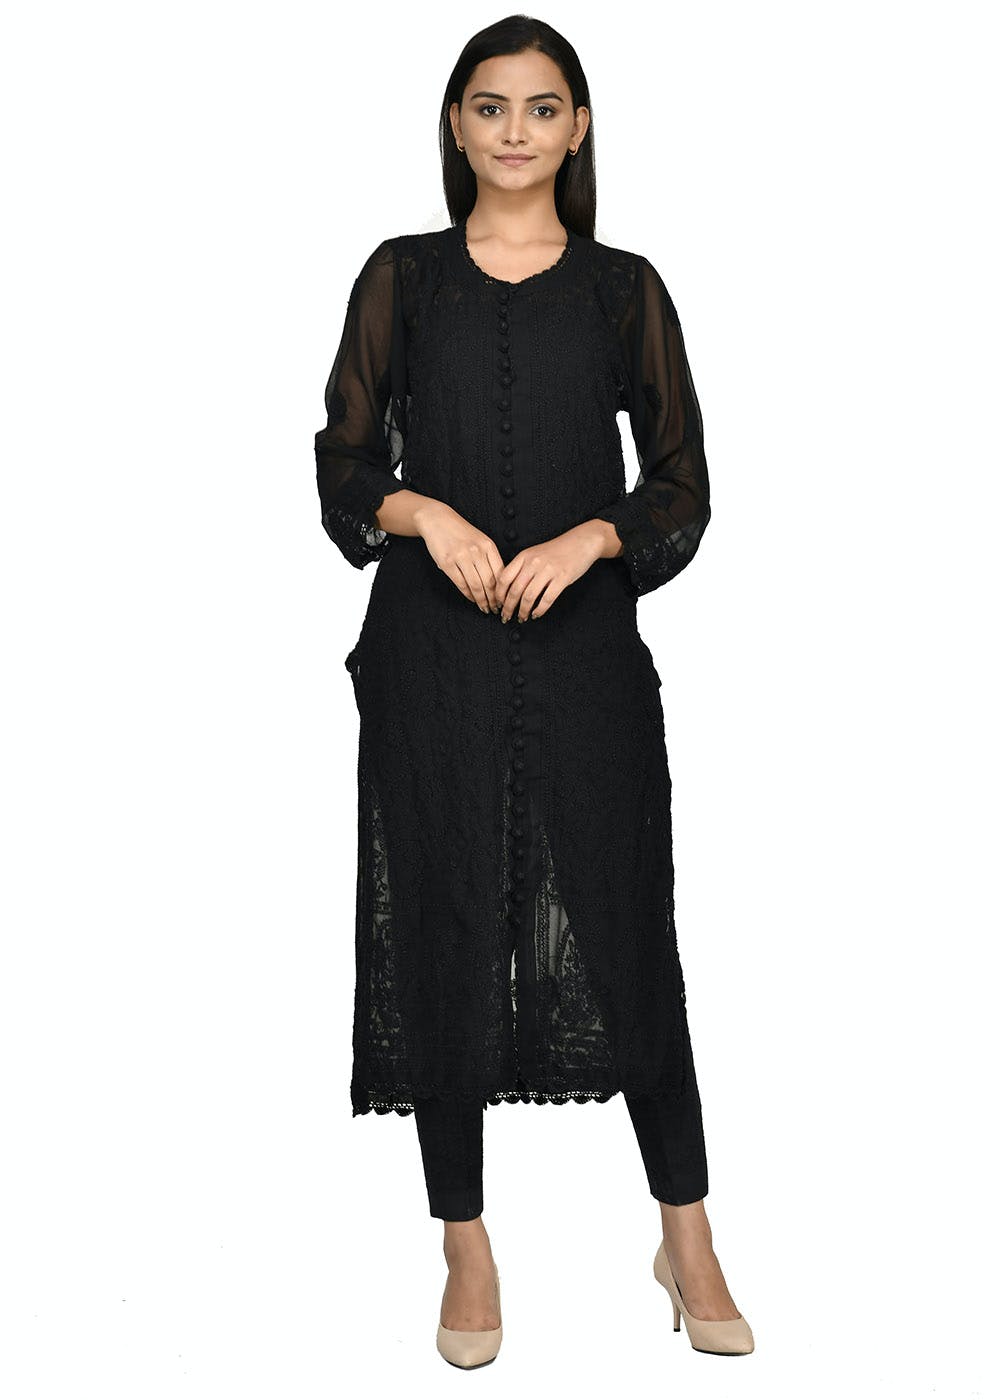 ISHIEQA's Black Georgette Chikankari Kurti - MV1704D | Stylish dress  designs, Kurti designs latest, Indian kurti designs